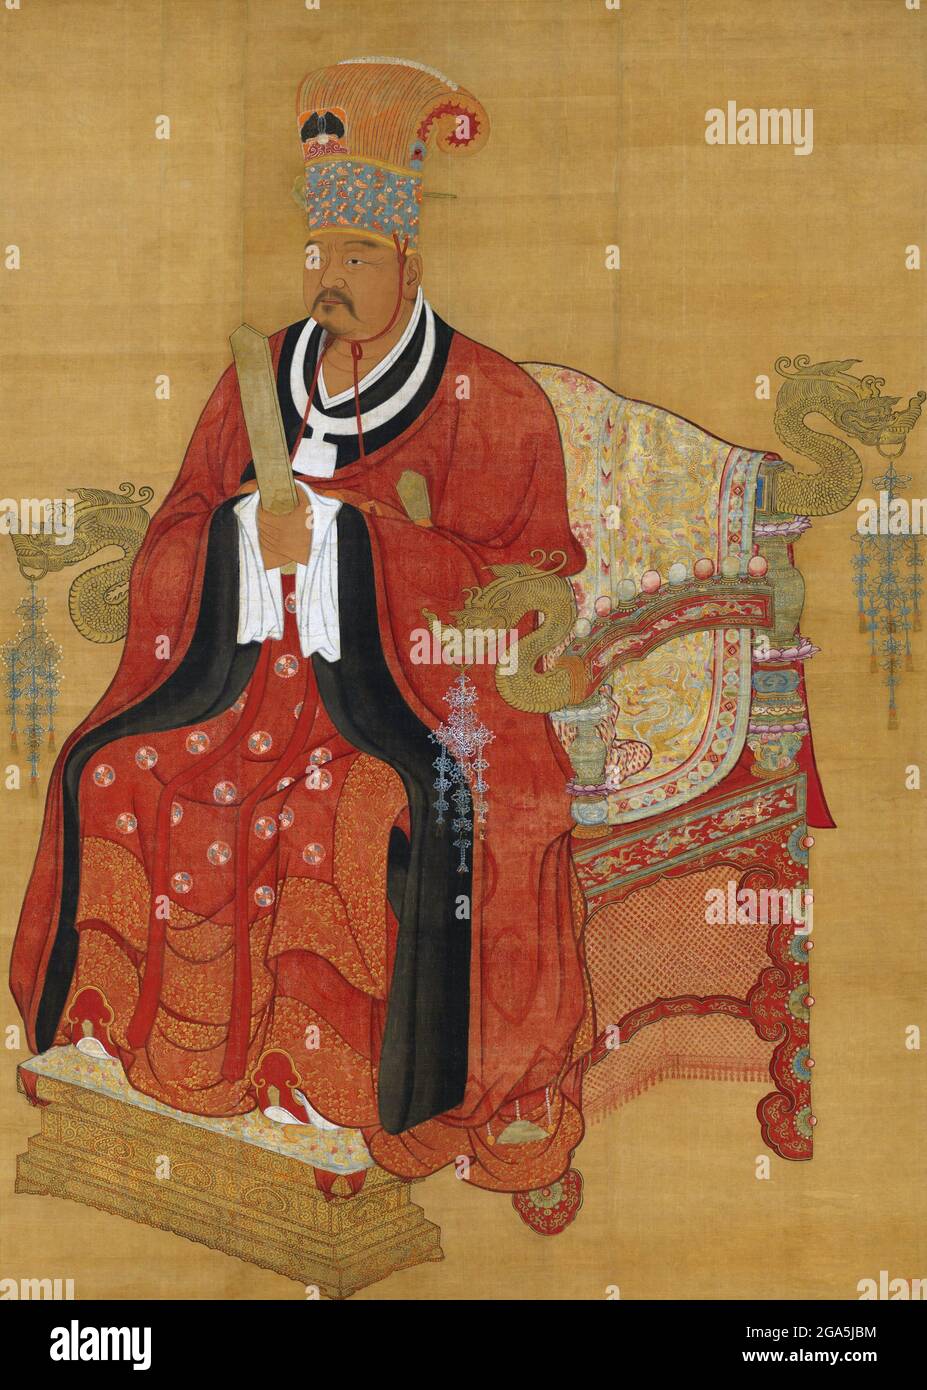 Cina: L'imperatore Xuanzu (Zhao Hongyi, 899-956), padre dei primi due imperatori della canzone Taizu e Taizong, onorato postumo come antenato fondatore della dinastia Song. Pittura a spirale appesa, dinastia Song (960-1279). Zhao Hongyi (899-956) era il padre degli imperatori di canzone Taizu (r. 960-976) e Taizong (976-997). Fu un generale militare durante il periodo delle cinque dinastie e dei dieci regni, servendo sotto l'imperatore Zhuangzong di Tang più tardi. Si diceva che fosse un abile arciere di cavalli. Foto Stock